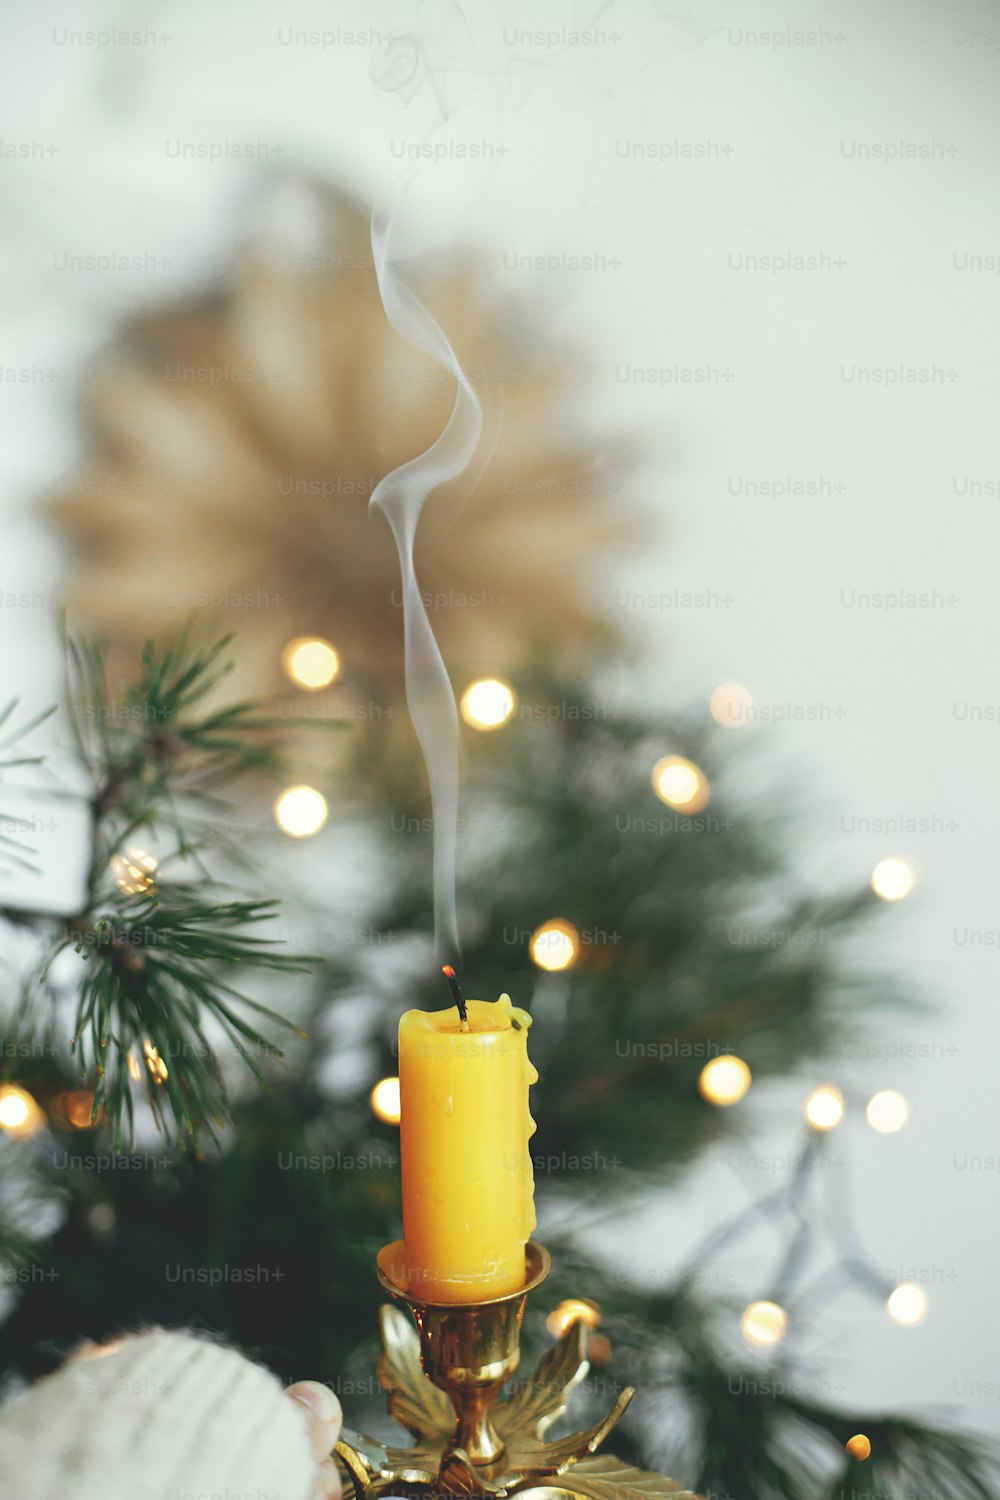 Mano sosteniendo elegante candelabro vintage con vela apagada y humo sobre fondo de luces cálidas, ramas de abeto y estrella sueca en una sala escandinava festiva. Casa hygge atmosférica. Relajar